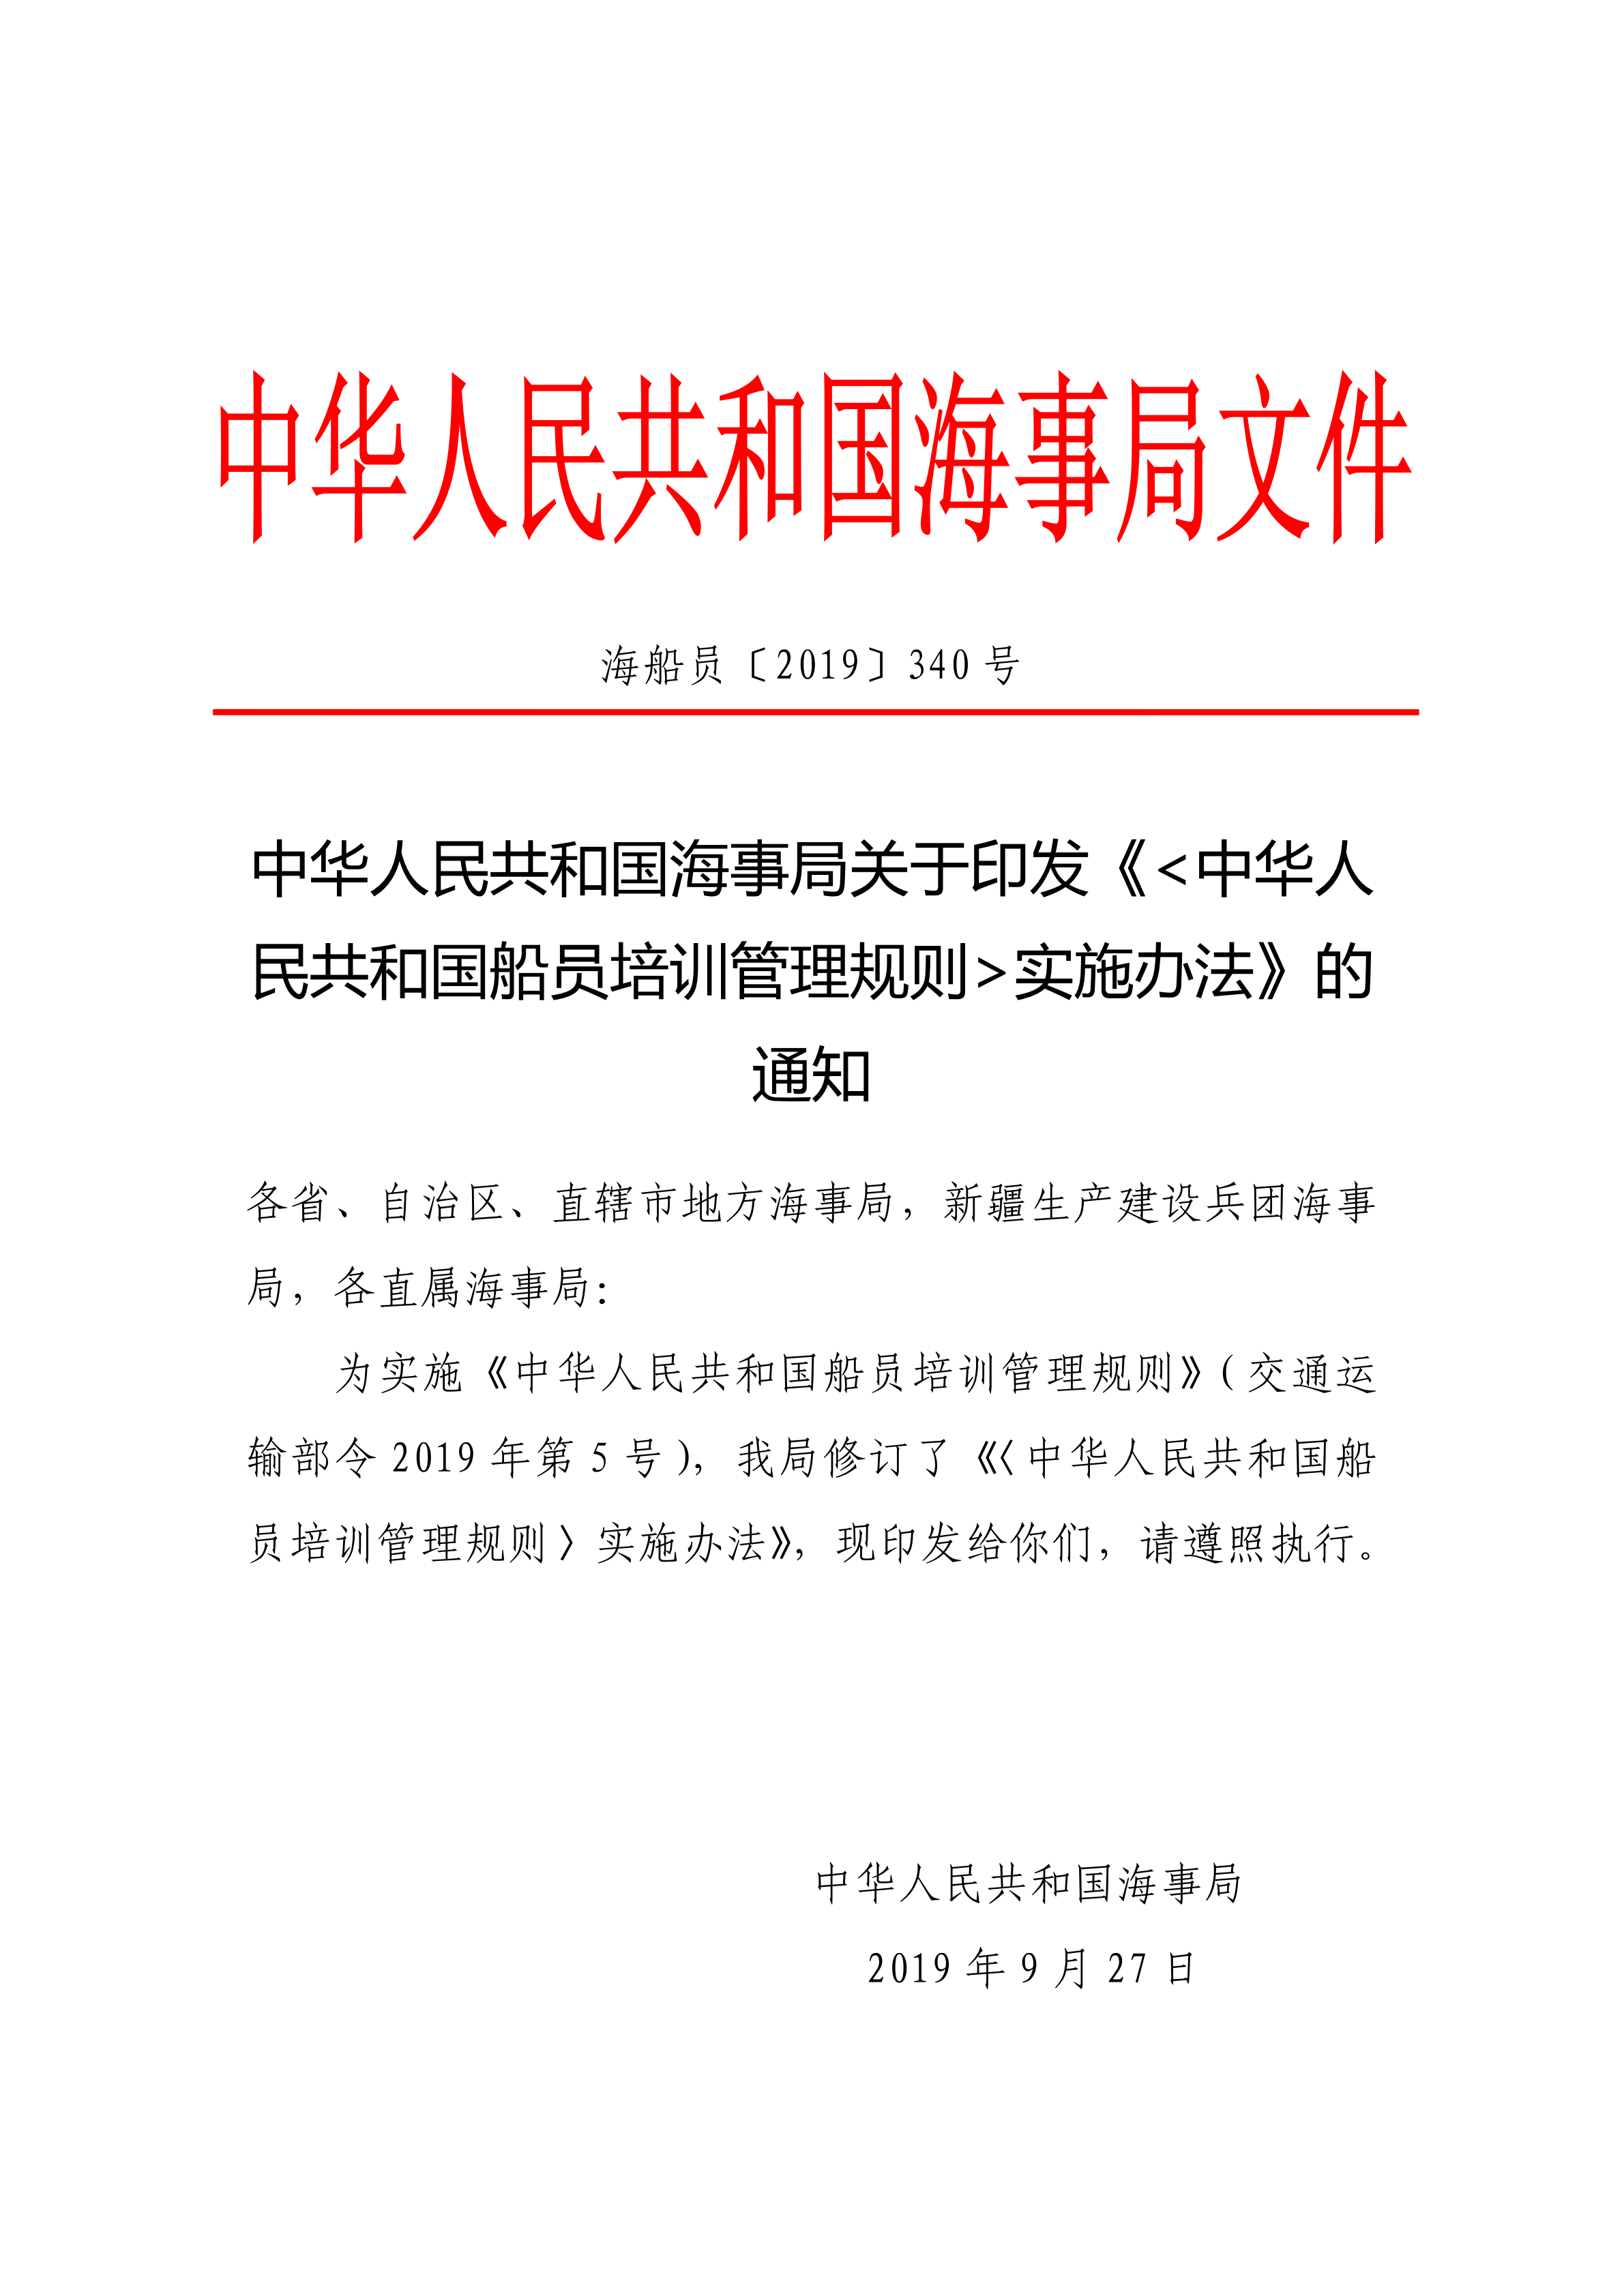 海船员〔2019〕340号《中华人民共和国船员培训管理规则》 实施办法